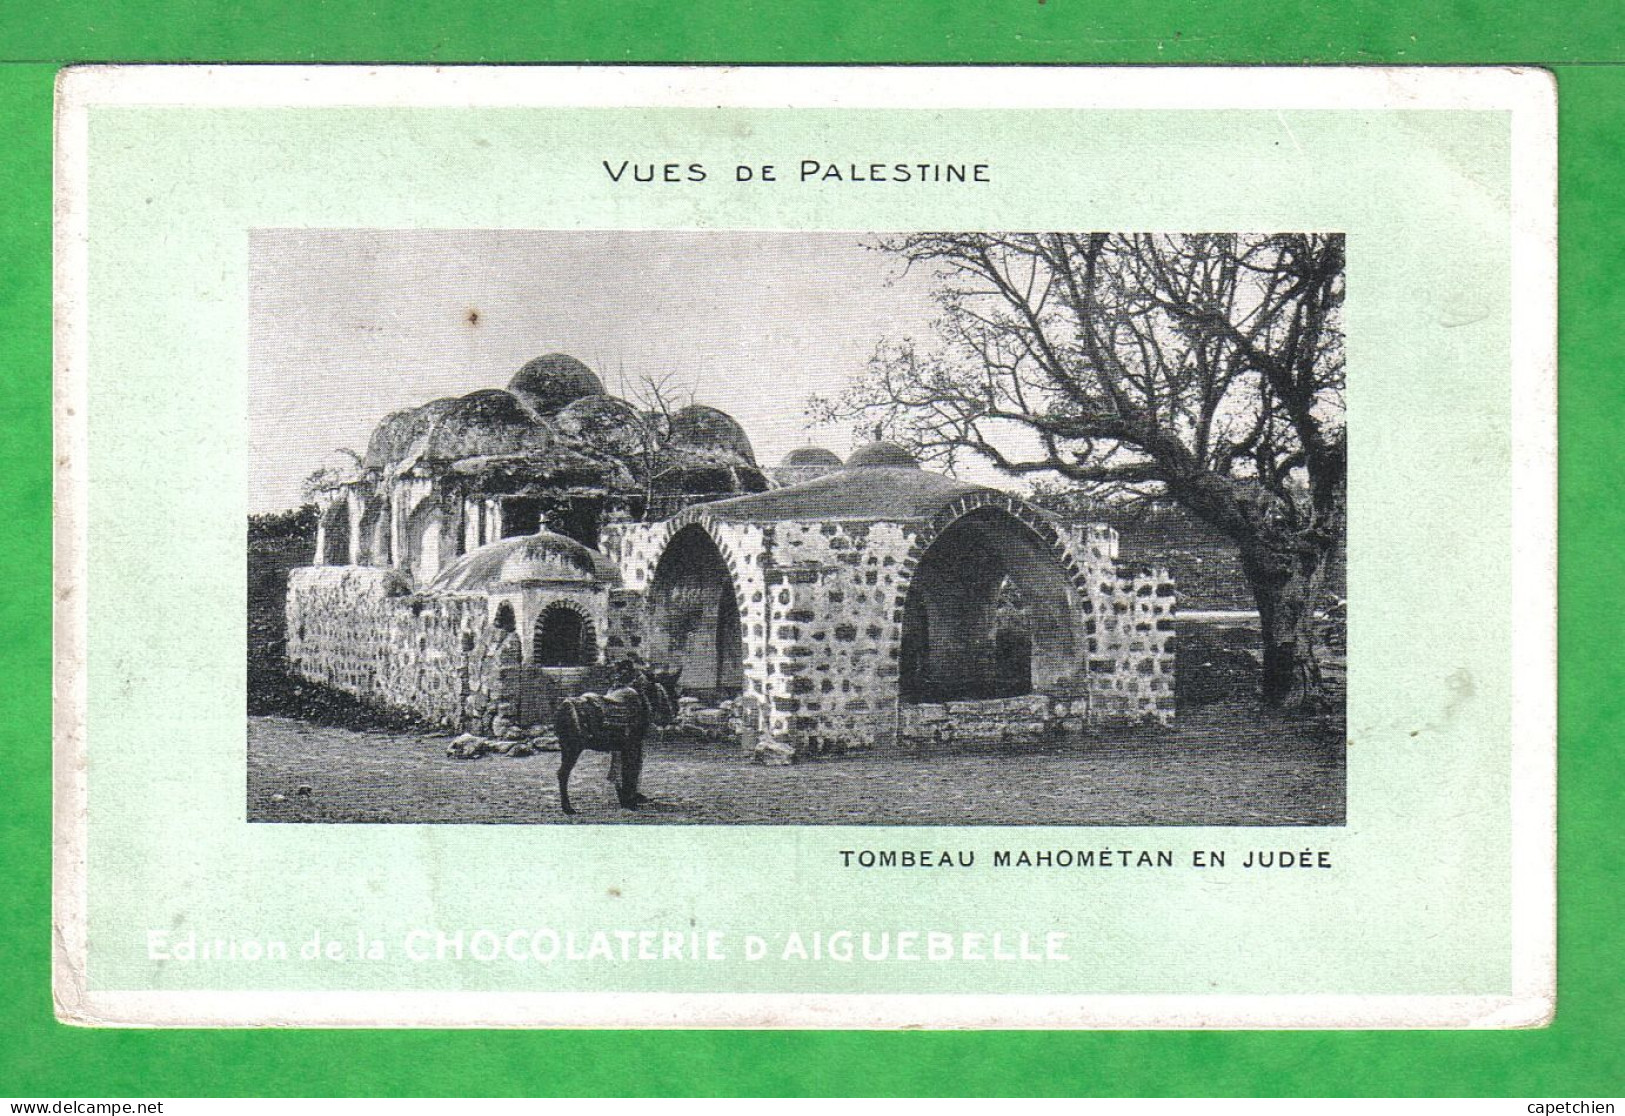 VUE DE PALESTINE -  TOMBEAU MAHOMETAN EN JUDEE- Carte Vierge - Palestine